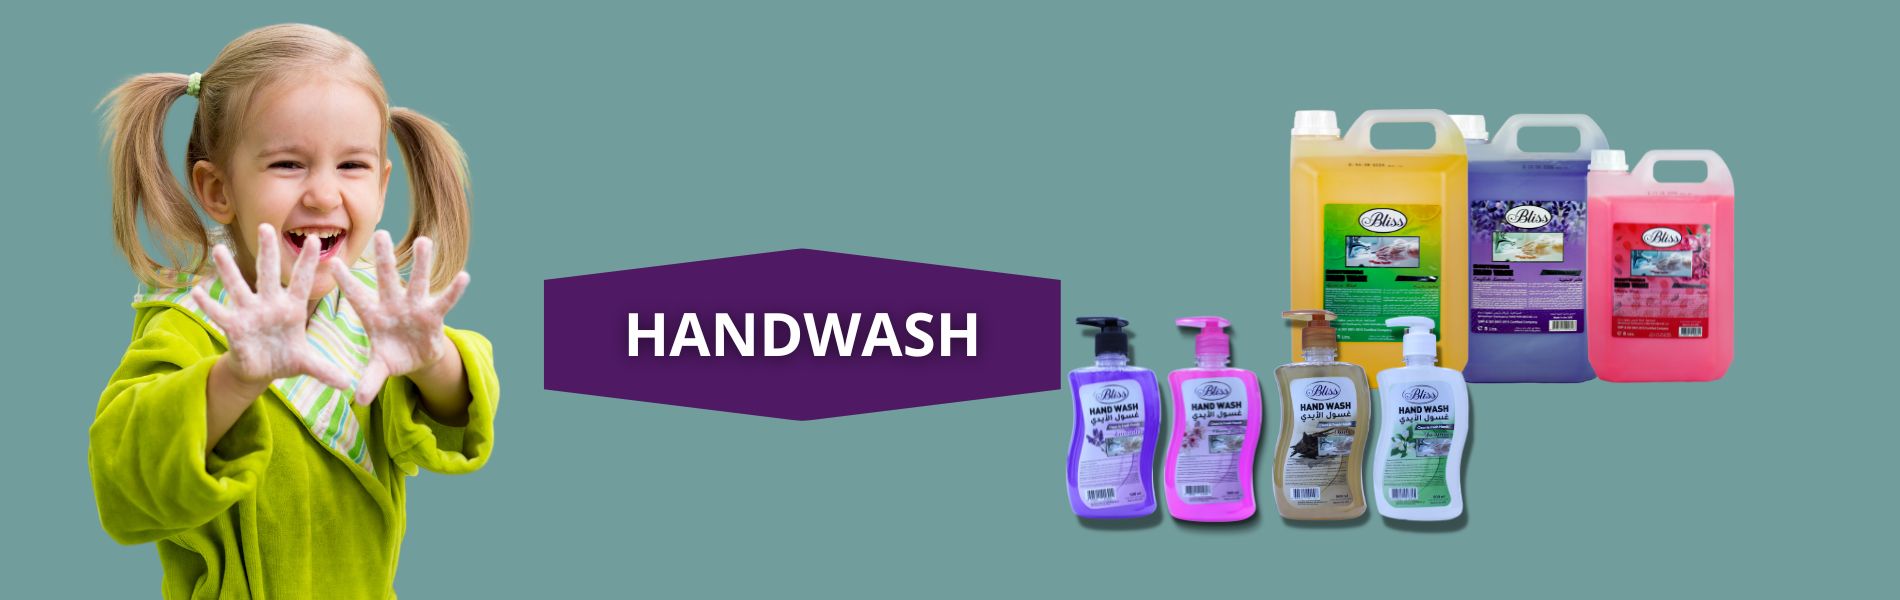 hand-wash-banner